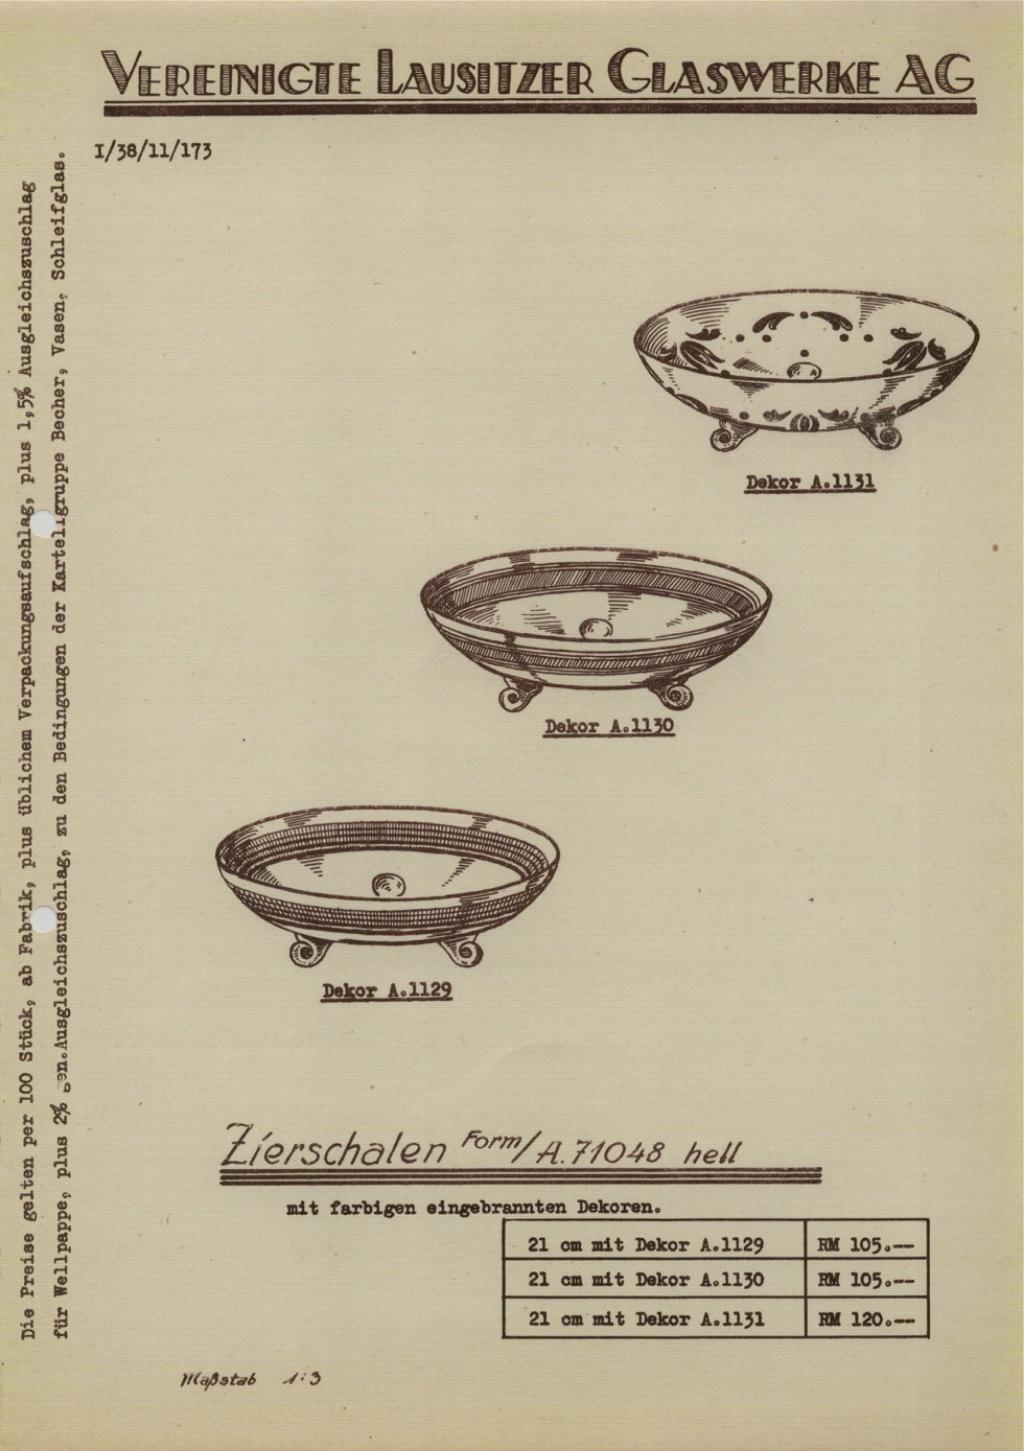 "VLG 1939 Schleifglas"